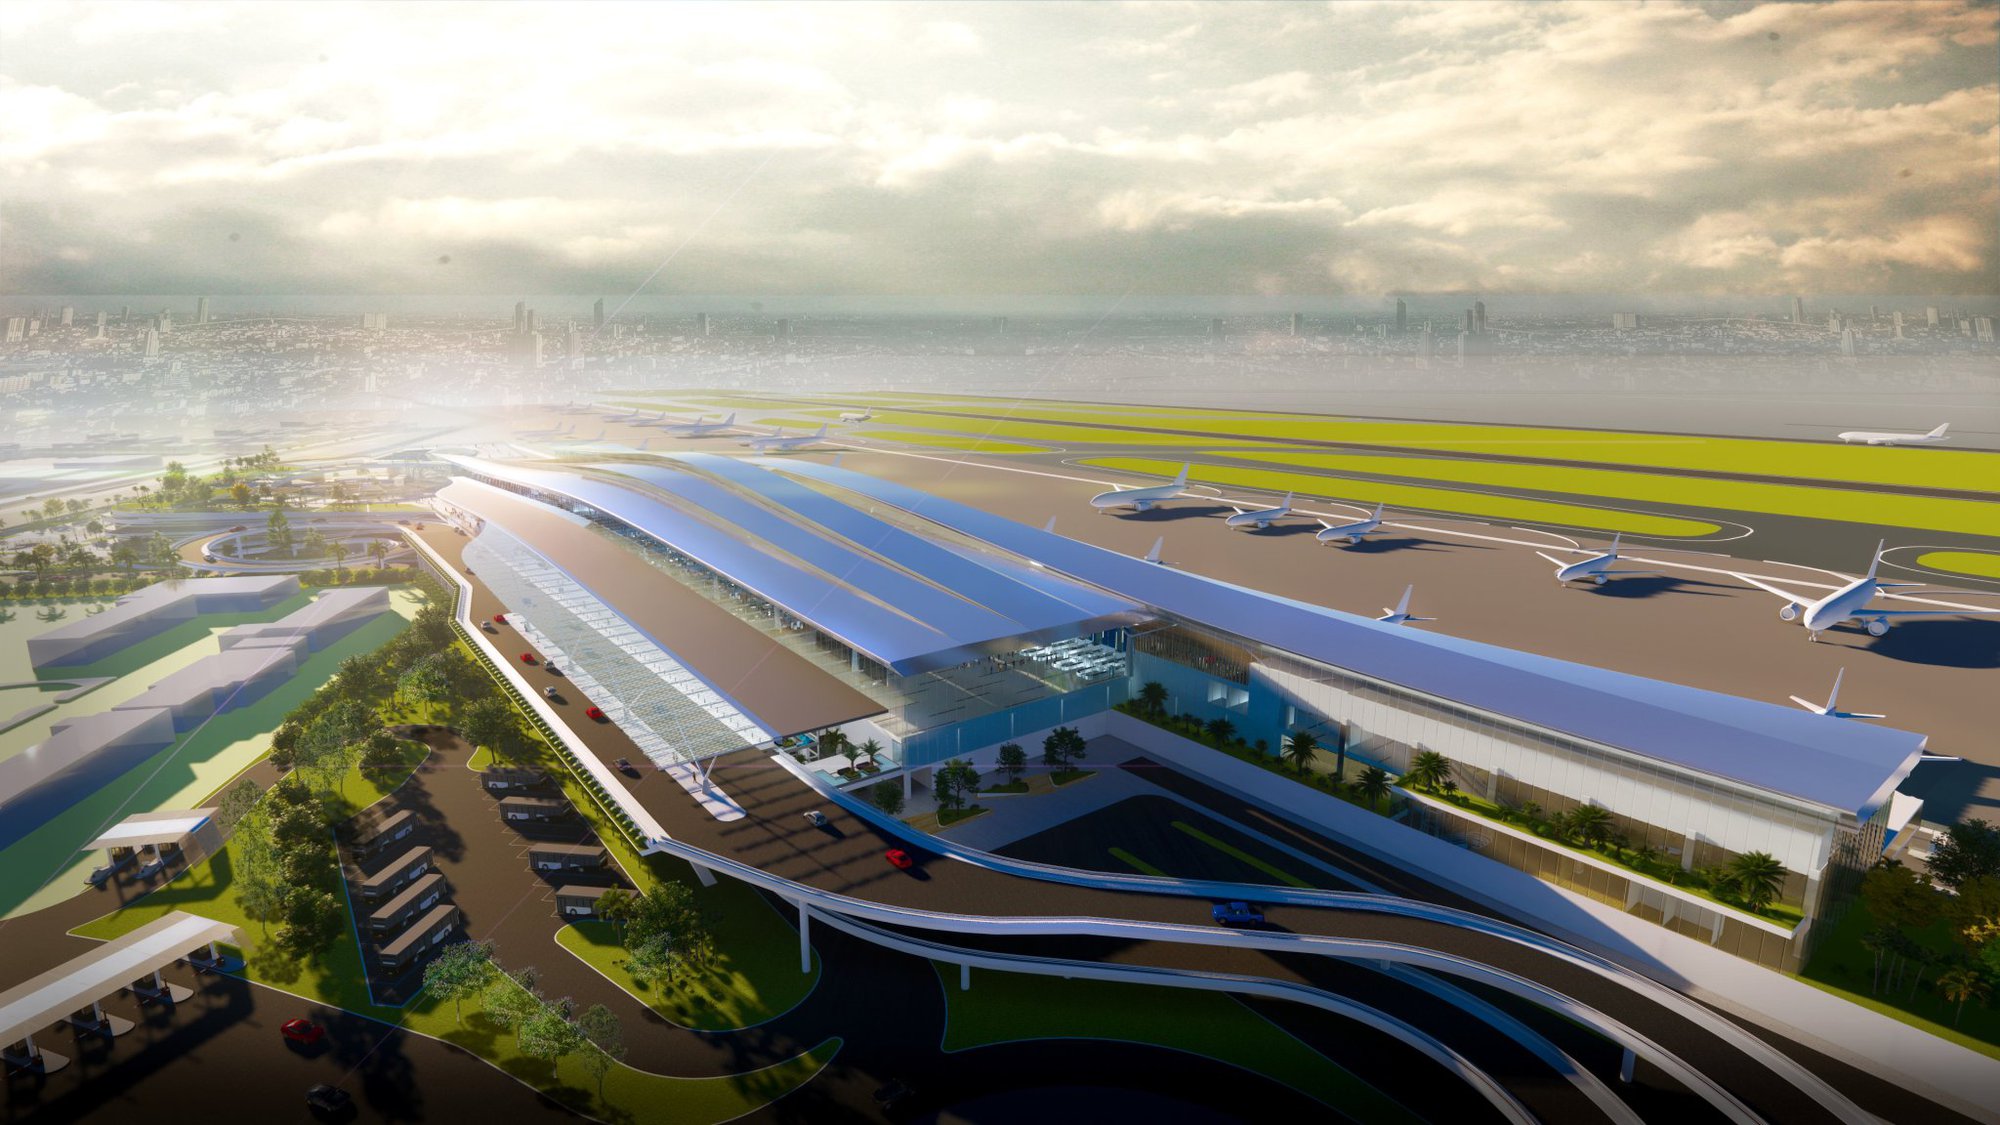 Ý tưởng thiết kế nhà ga T3 Tân Sơn Nhất lấy từ hình ảnh chiếc áo dài - Ảnh 2.